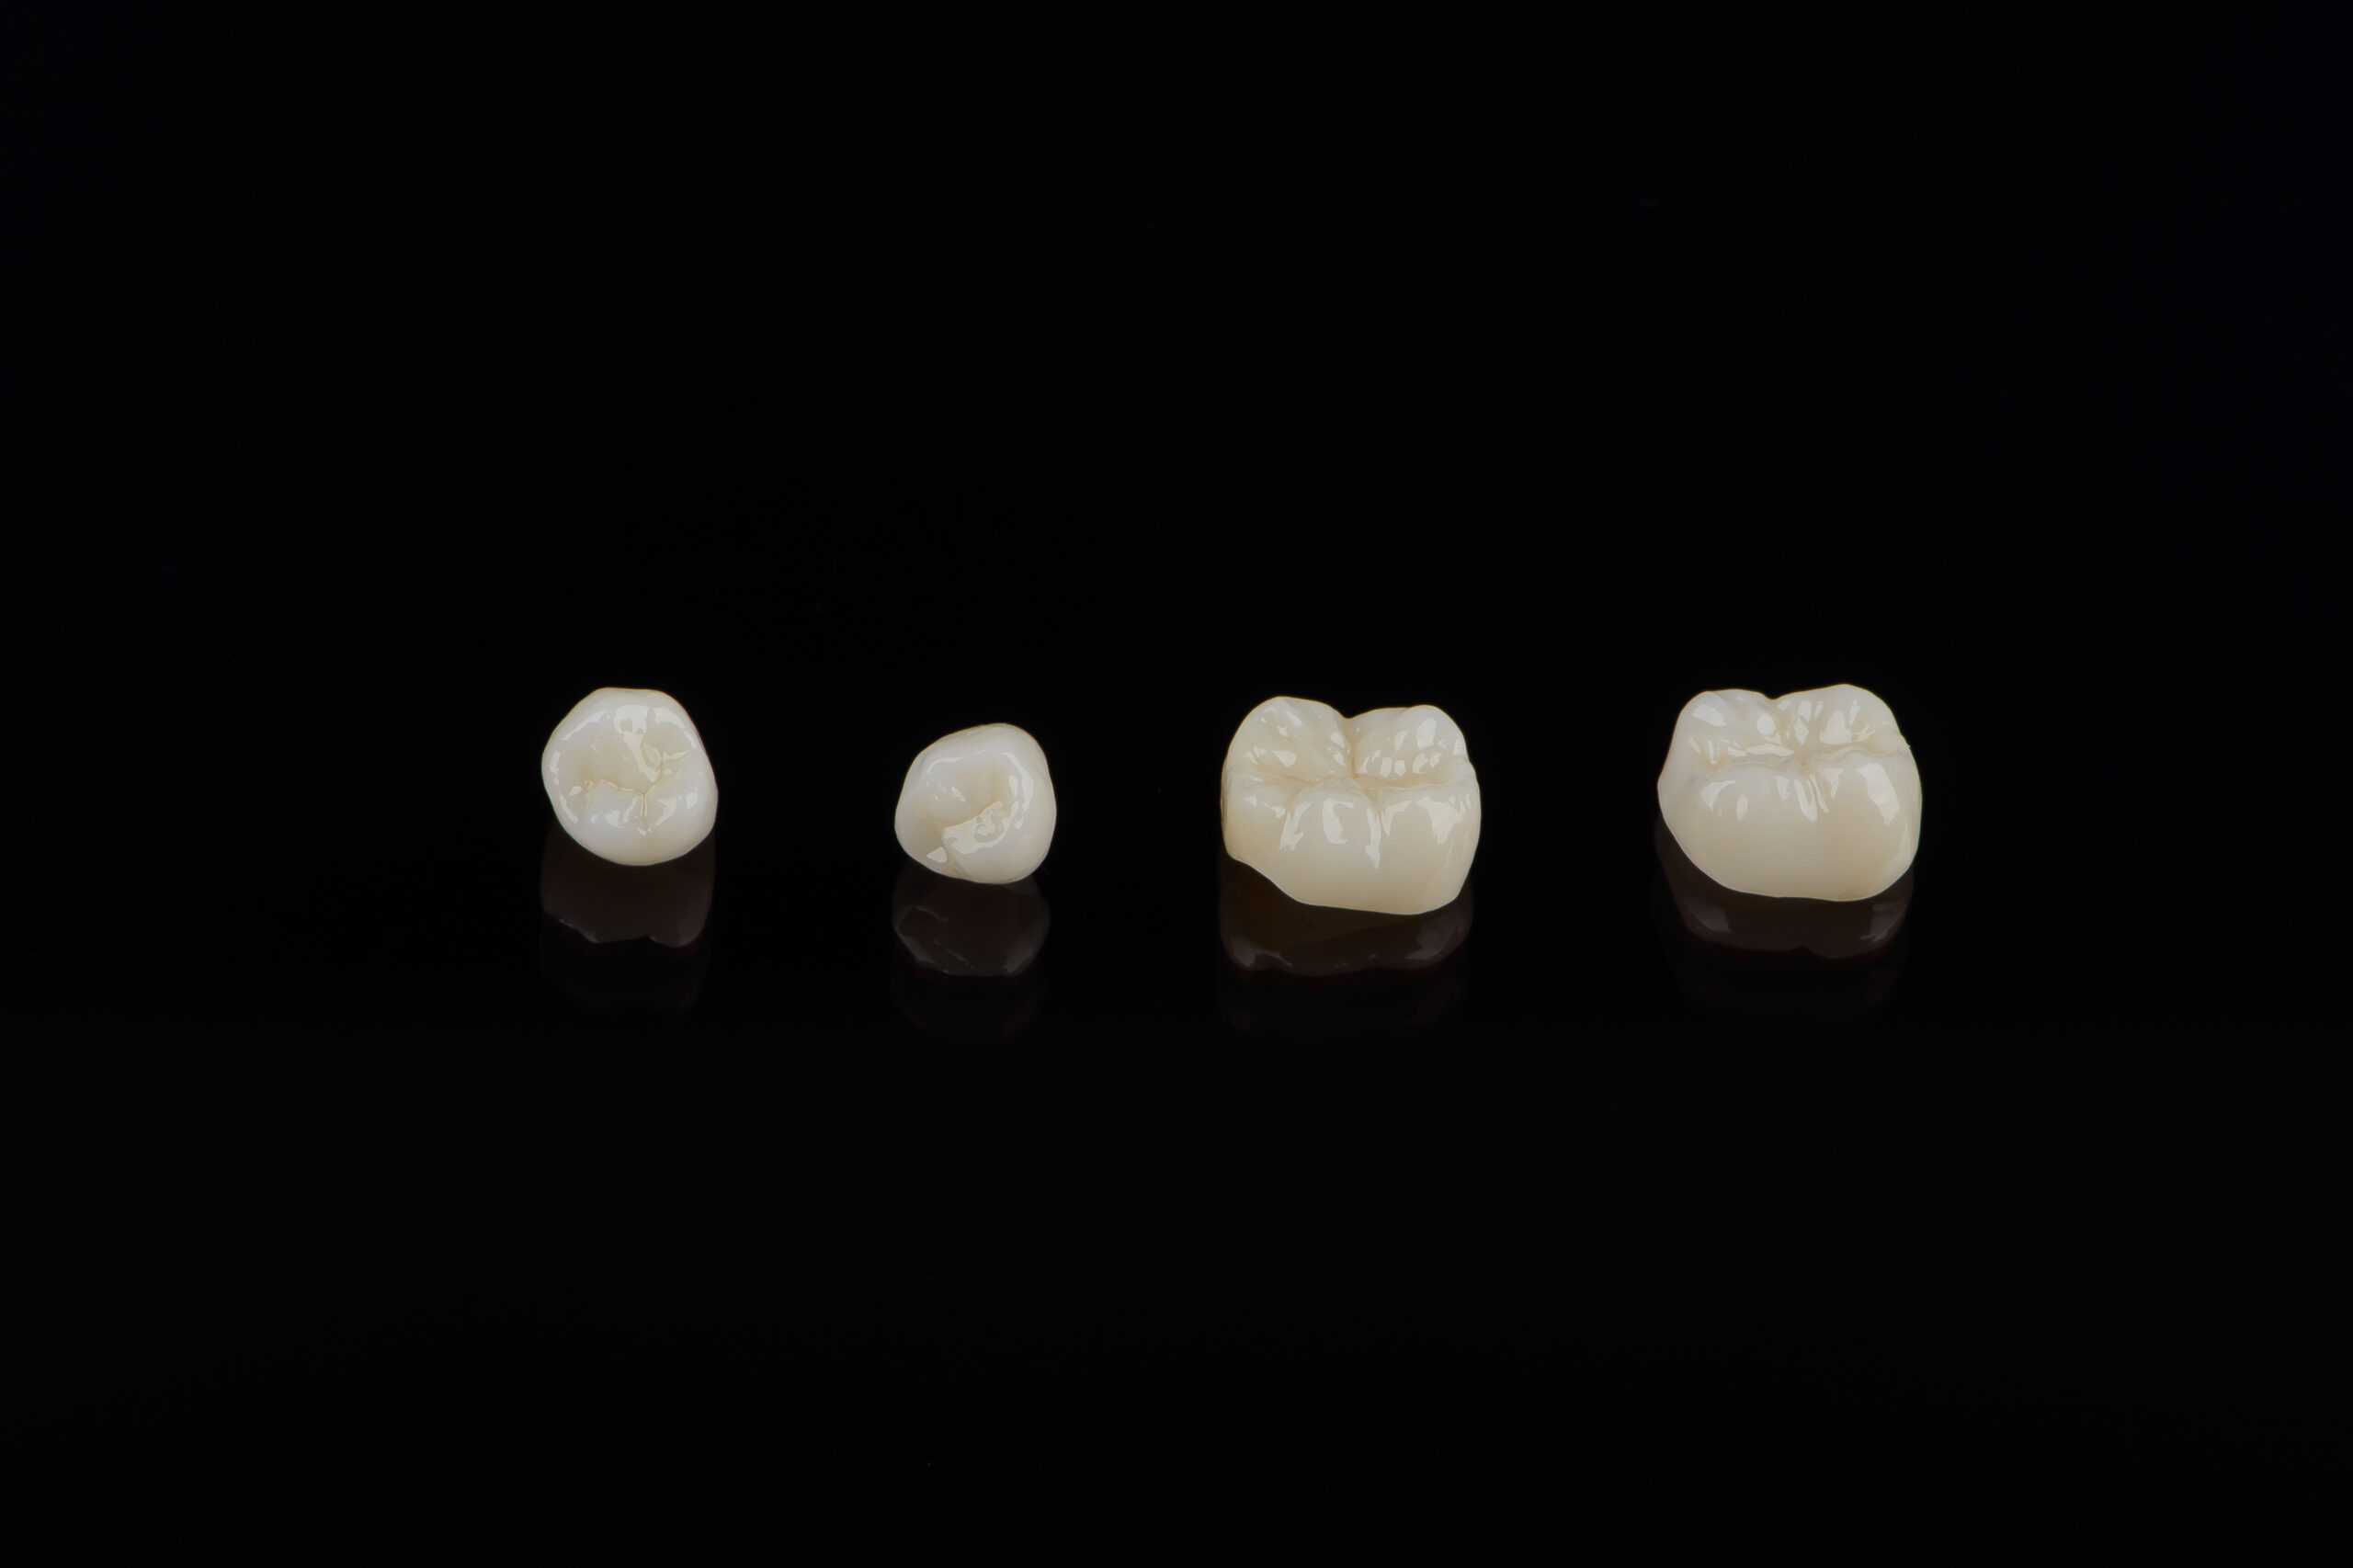 syosset dental crowns